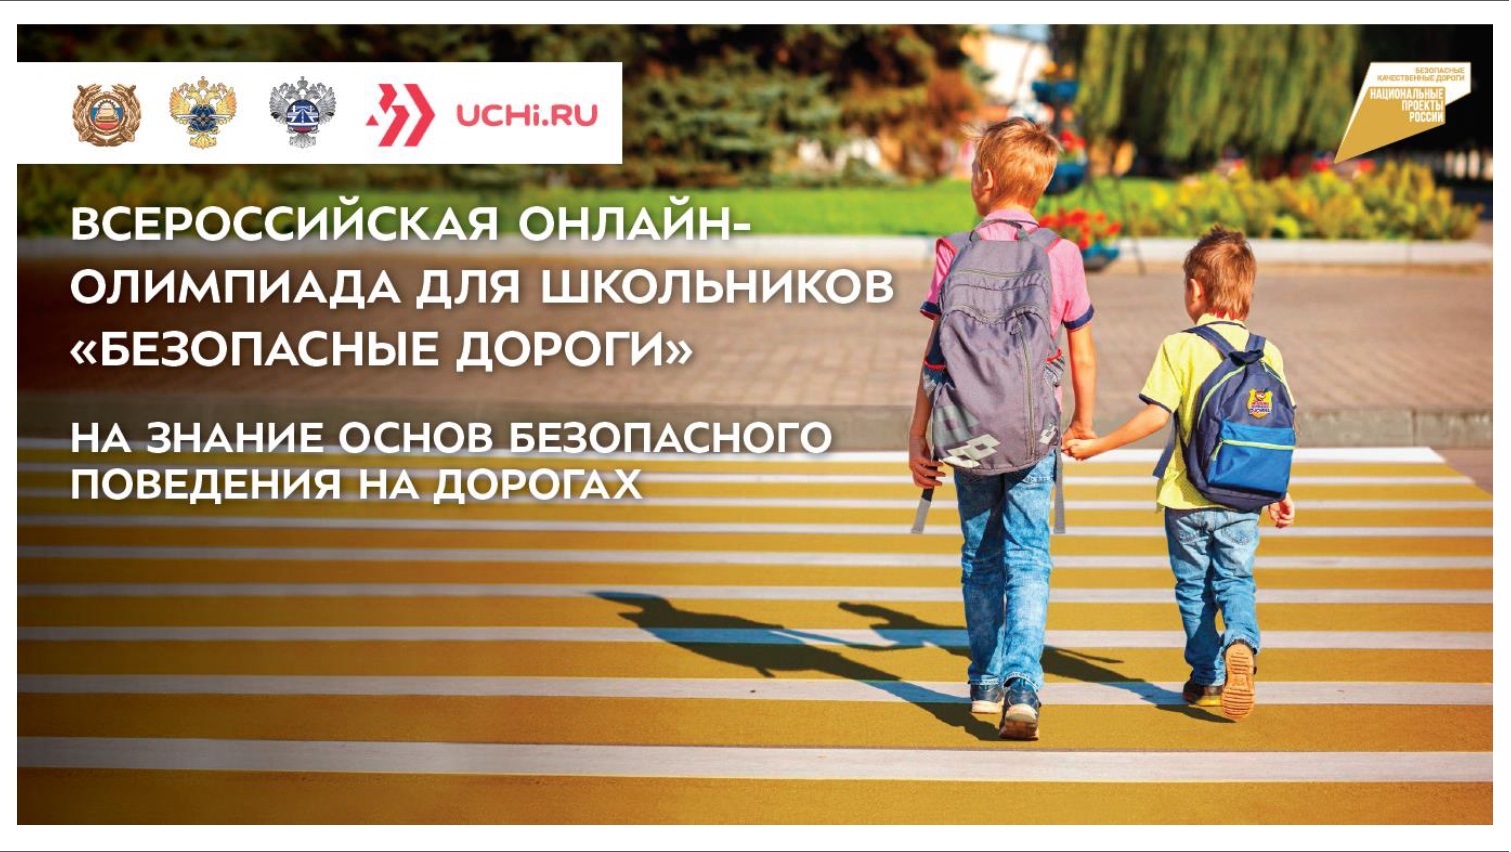 Нижегородские школьники примут участие во Всероссийской онлайн-олимпиаде «Безопасные дороги»